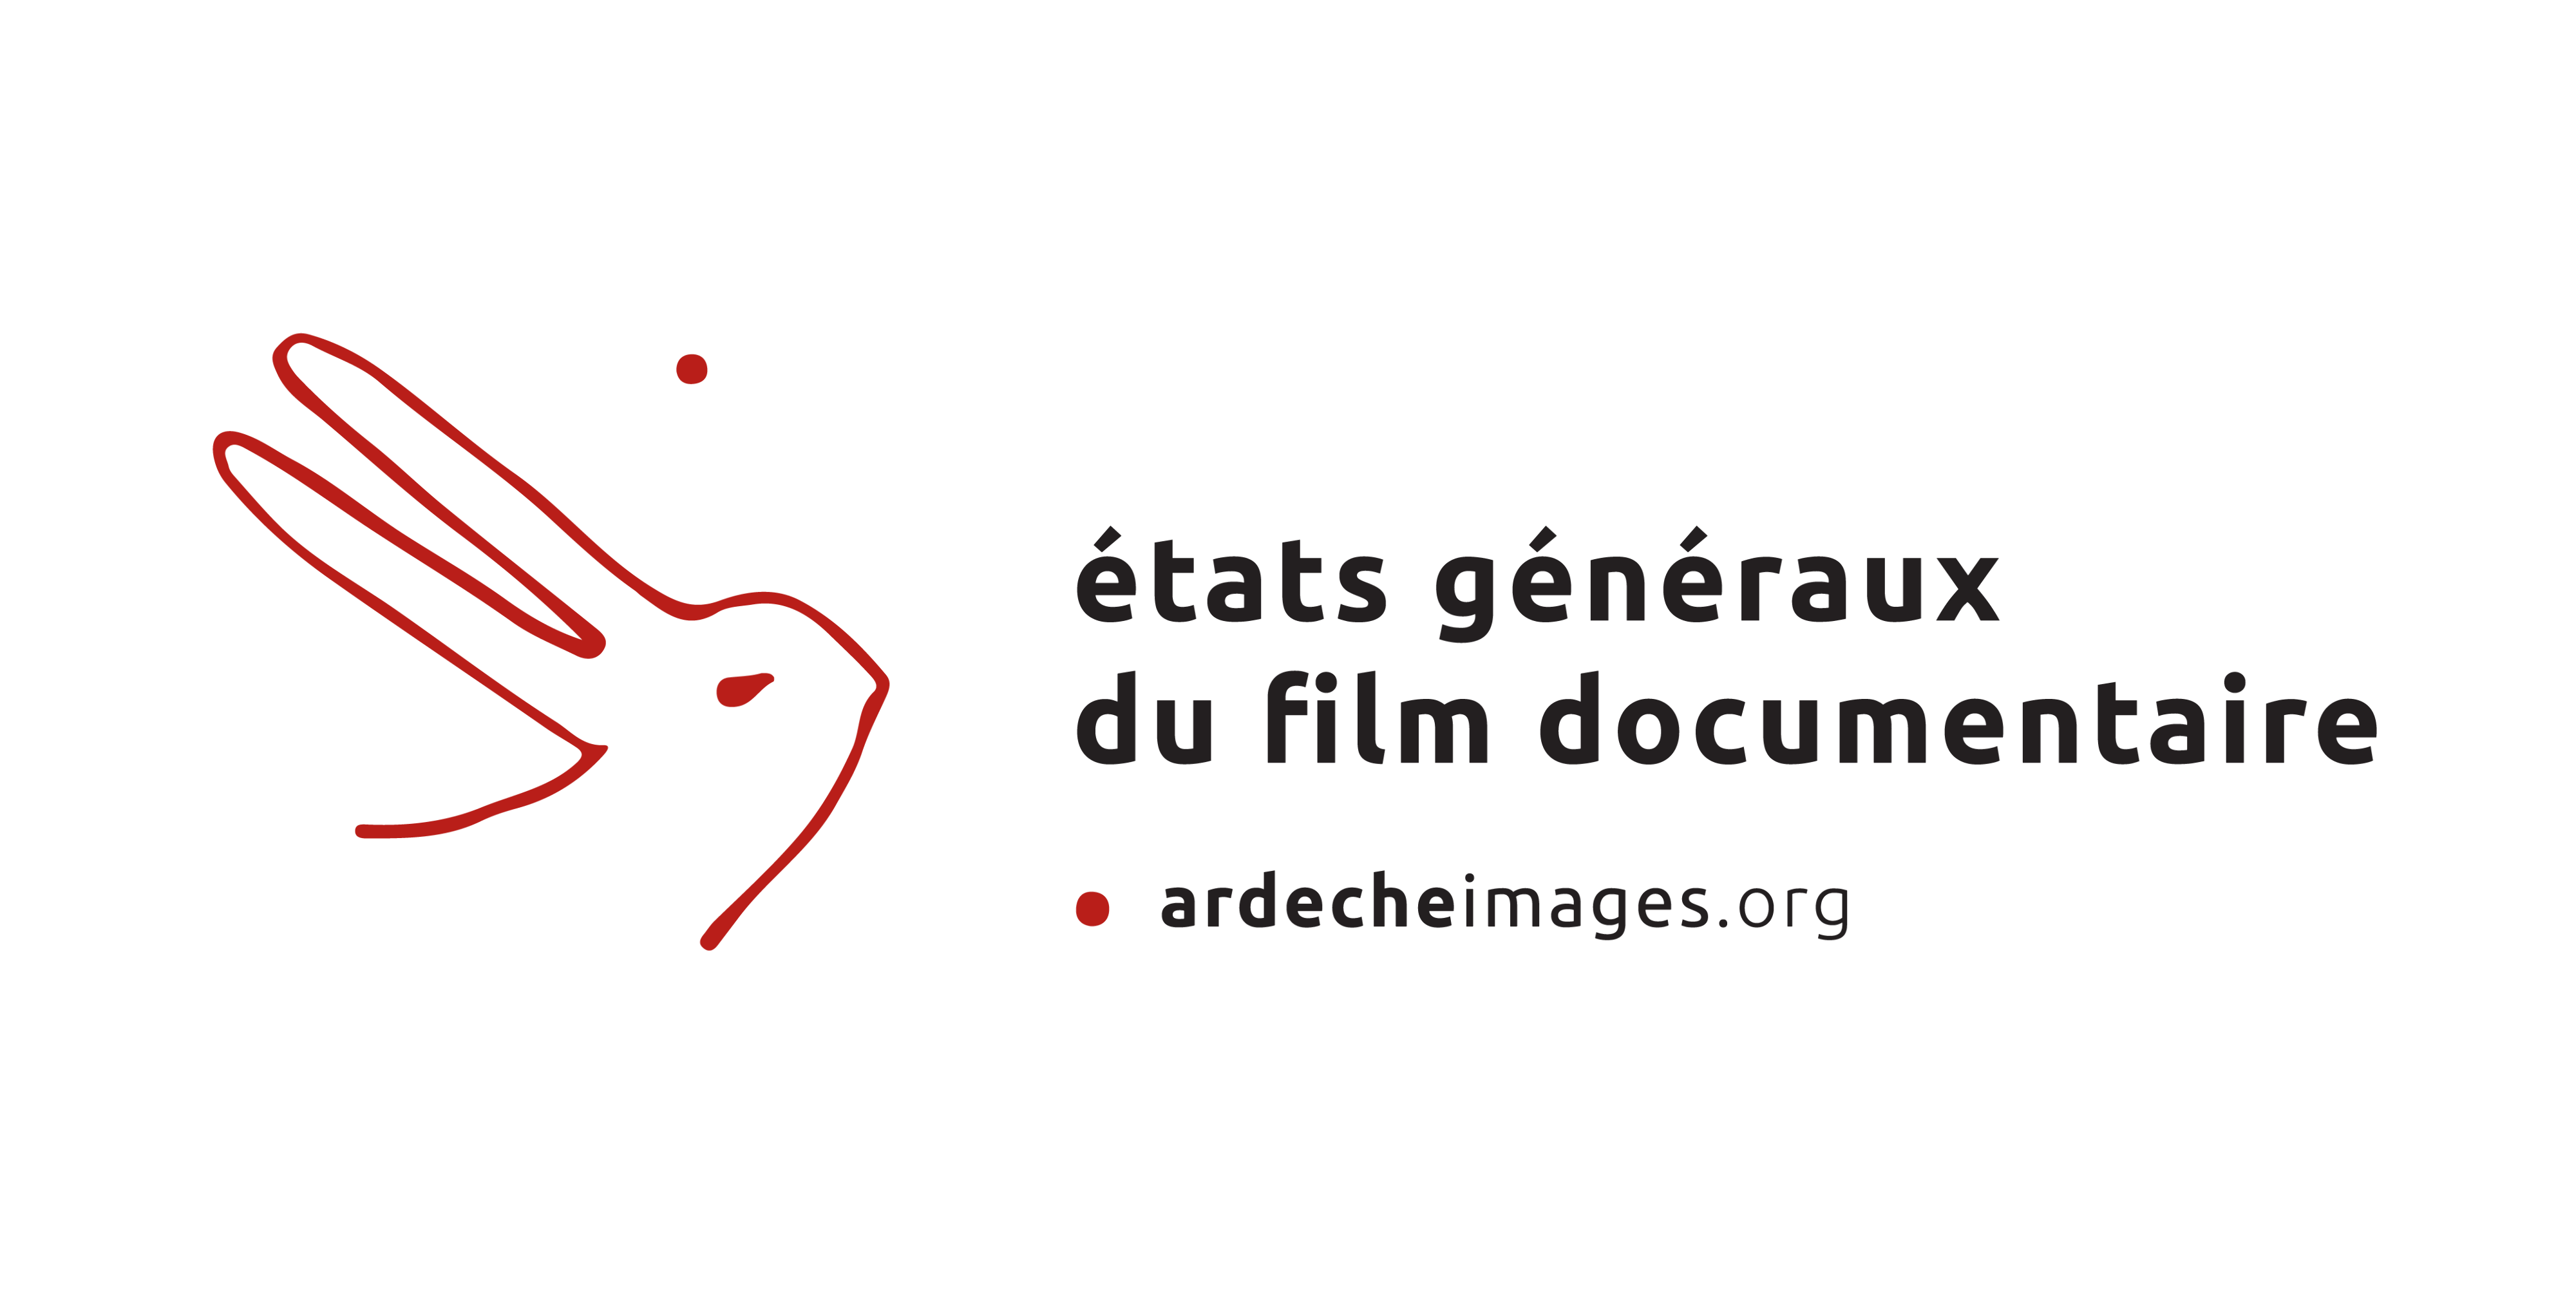 Les Etats Généraux Film Documentaire